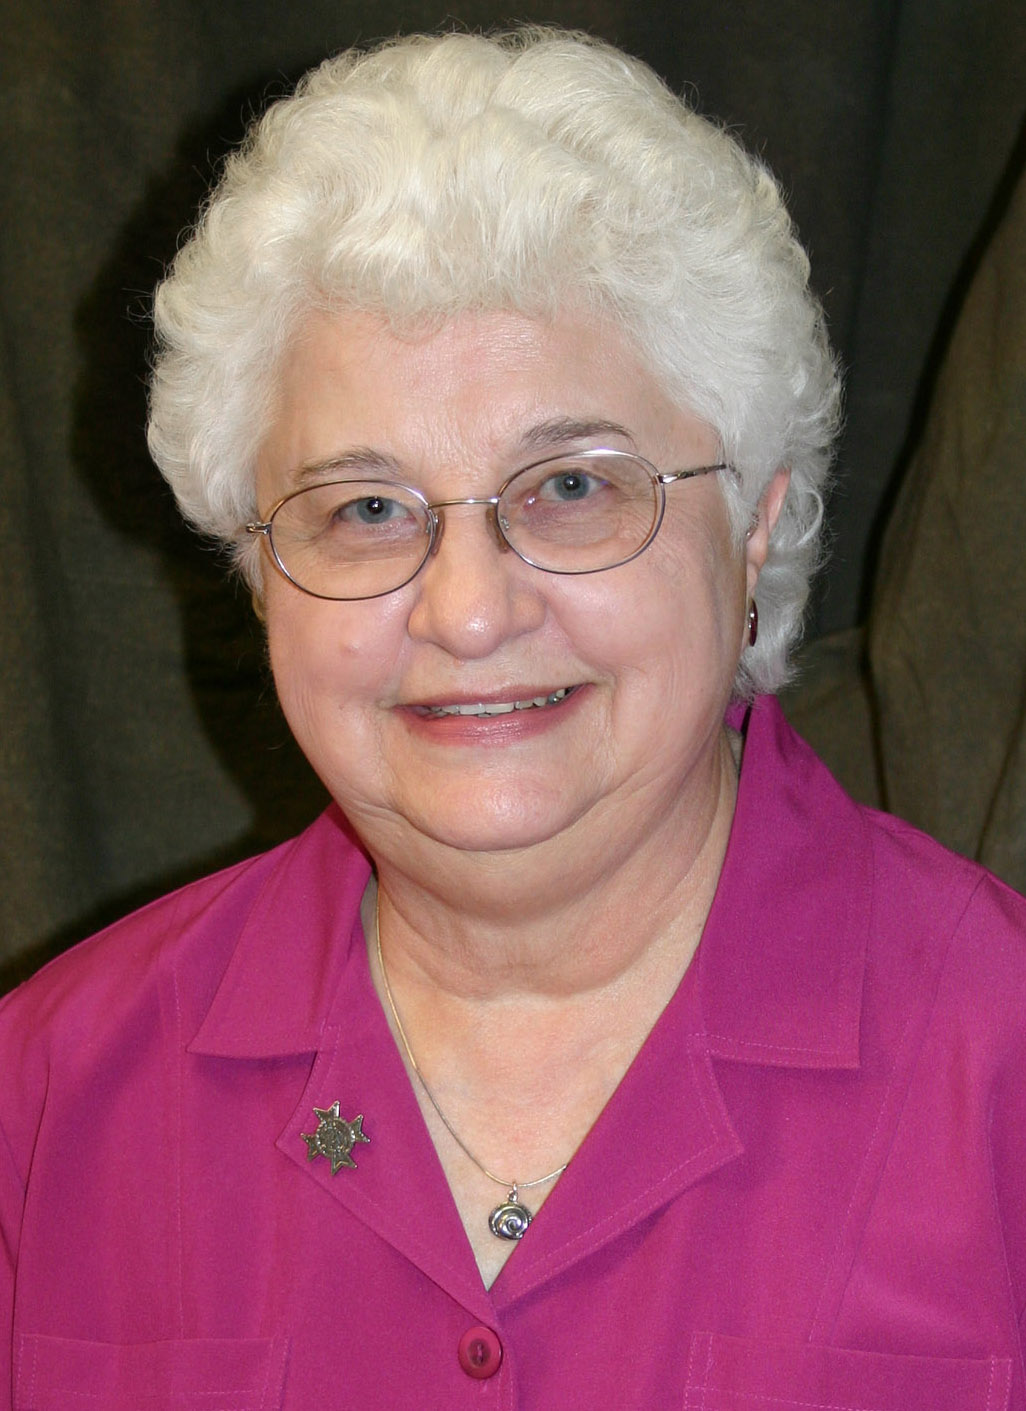 Sister Joan Weisenbeck